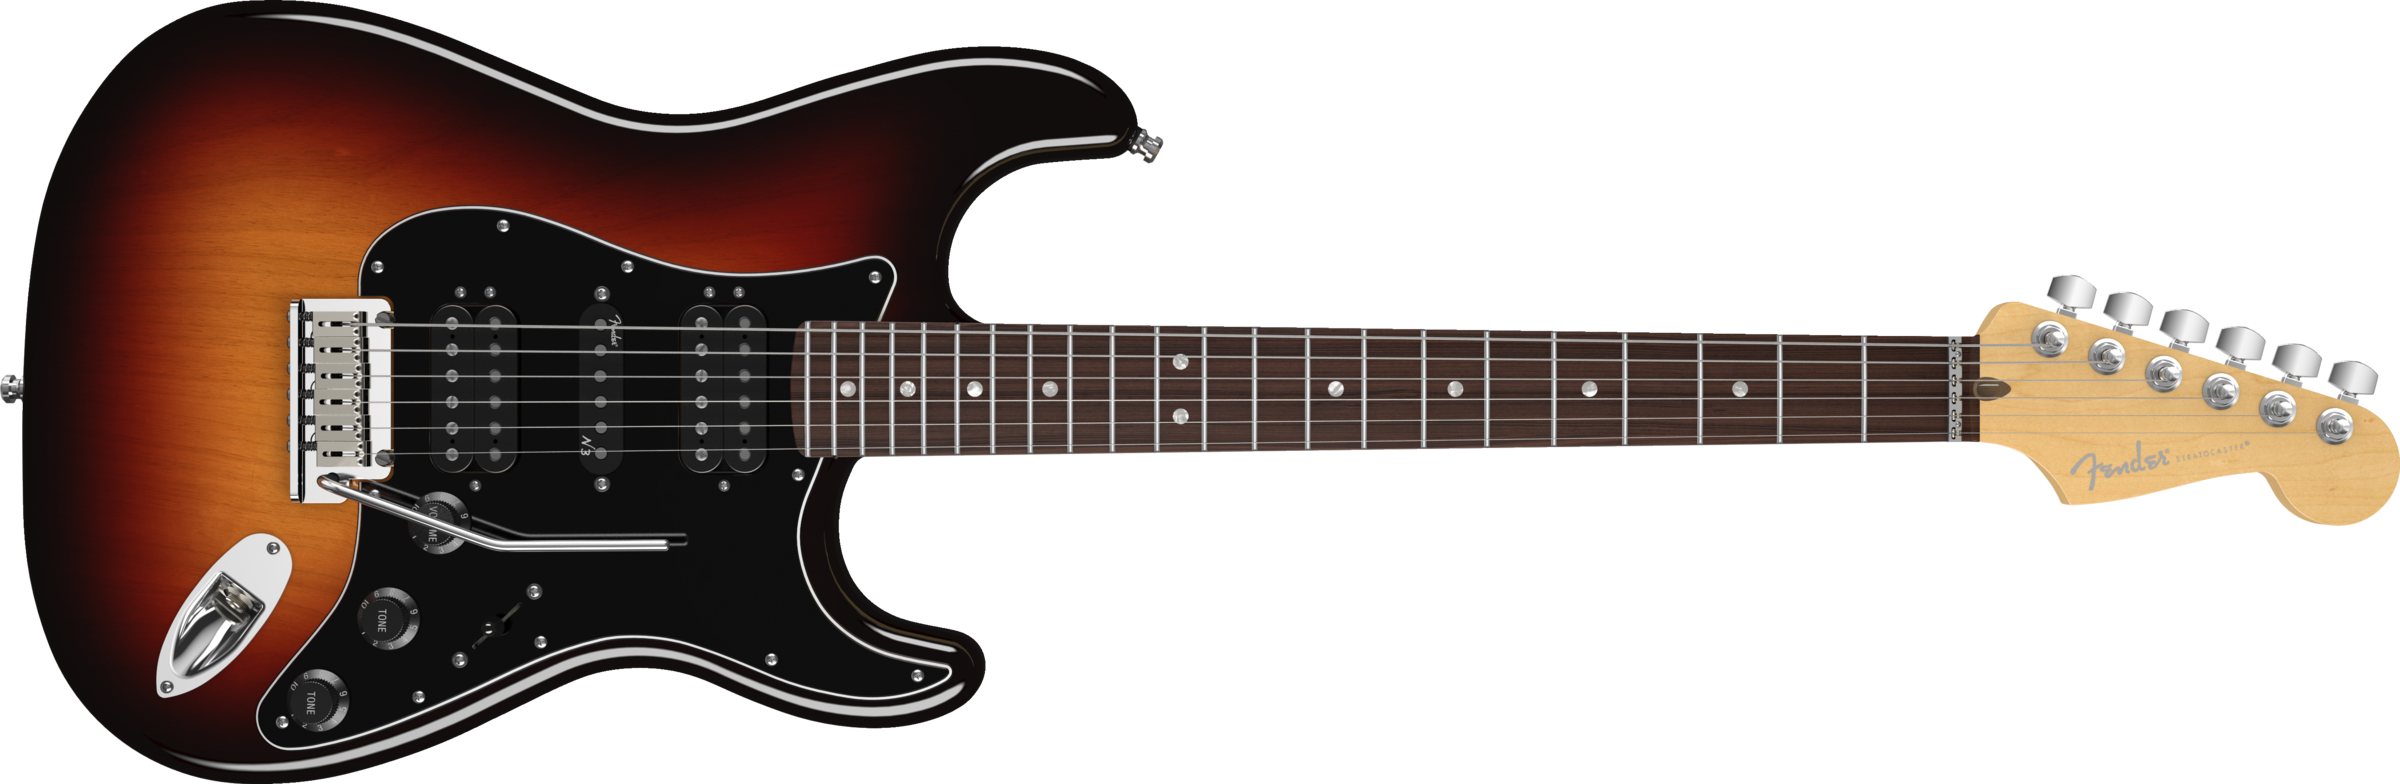 Guitar PNG Transparent Image